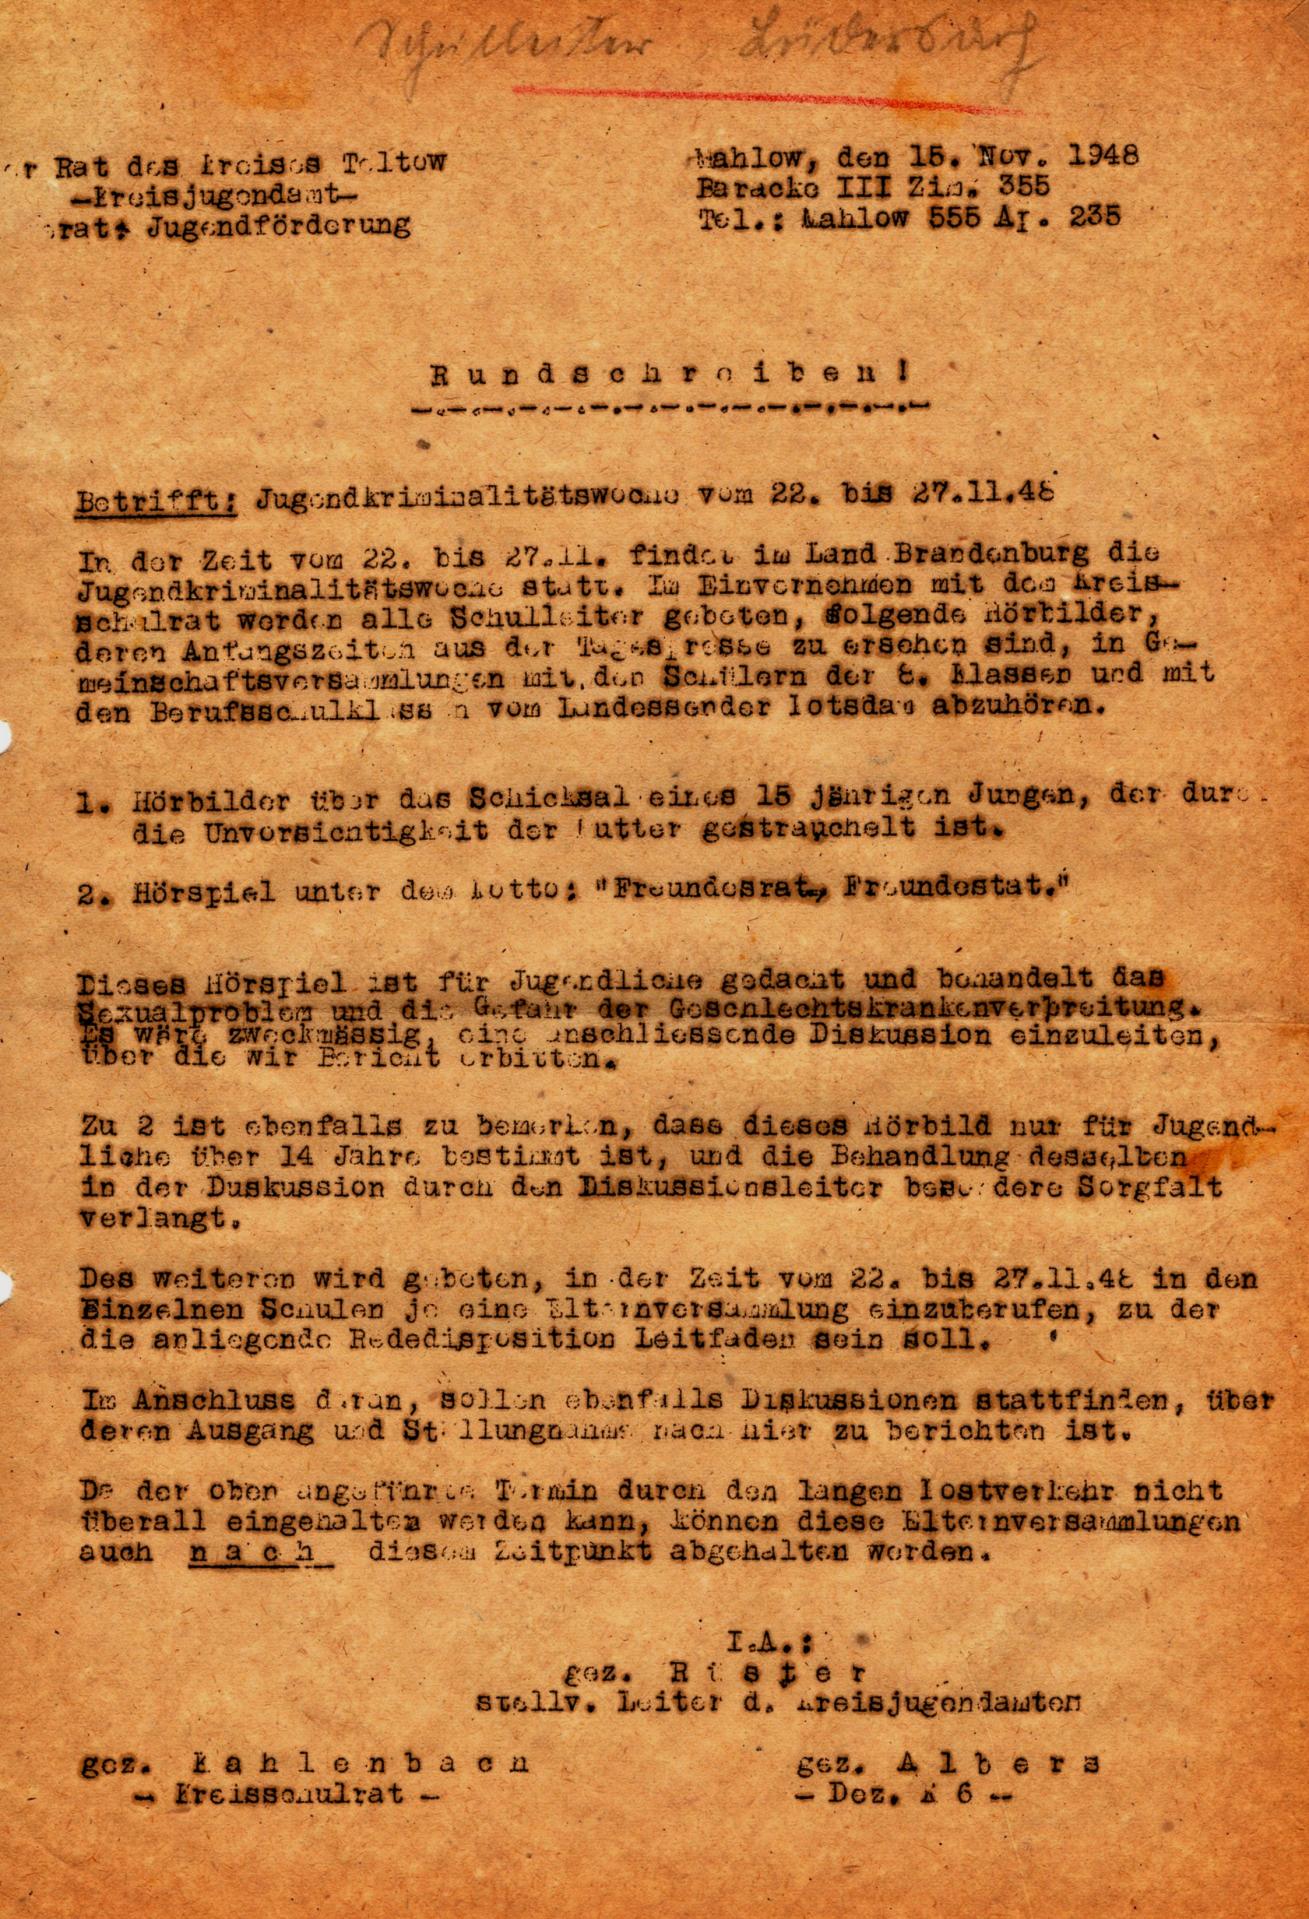 1948_Rundschreiben_Gemeindevorsther_Jugendkriminalitaetswoche